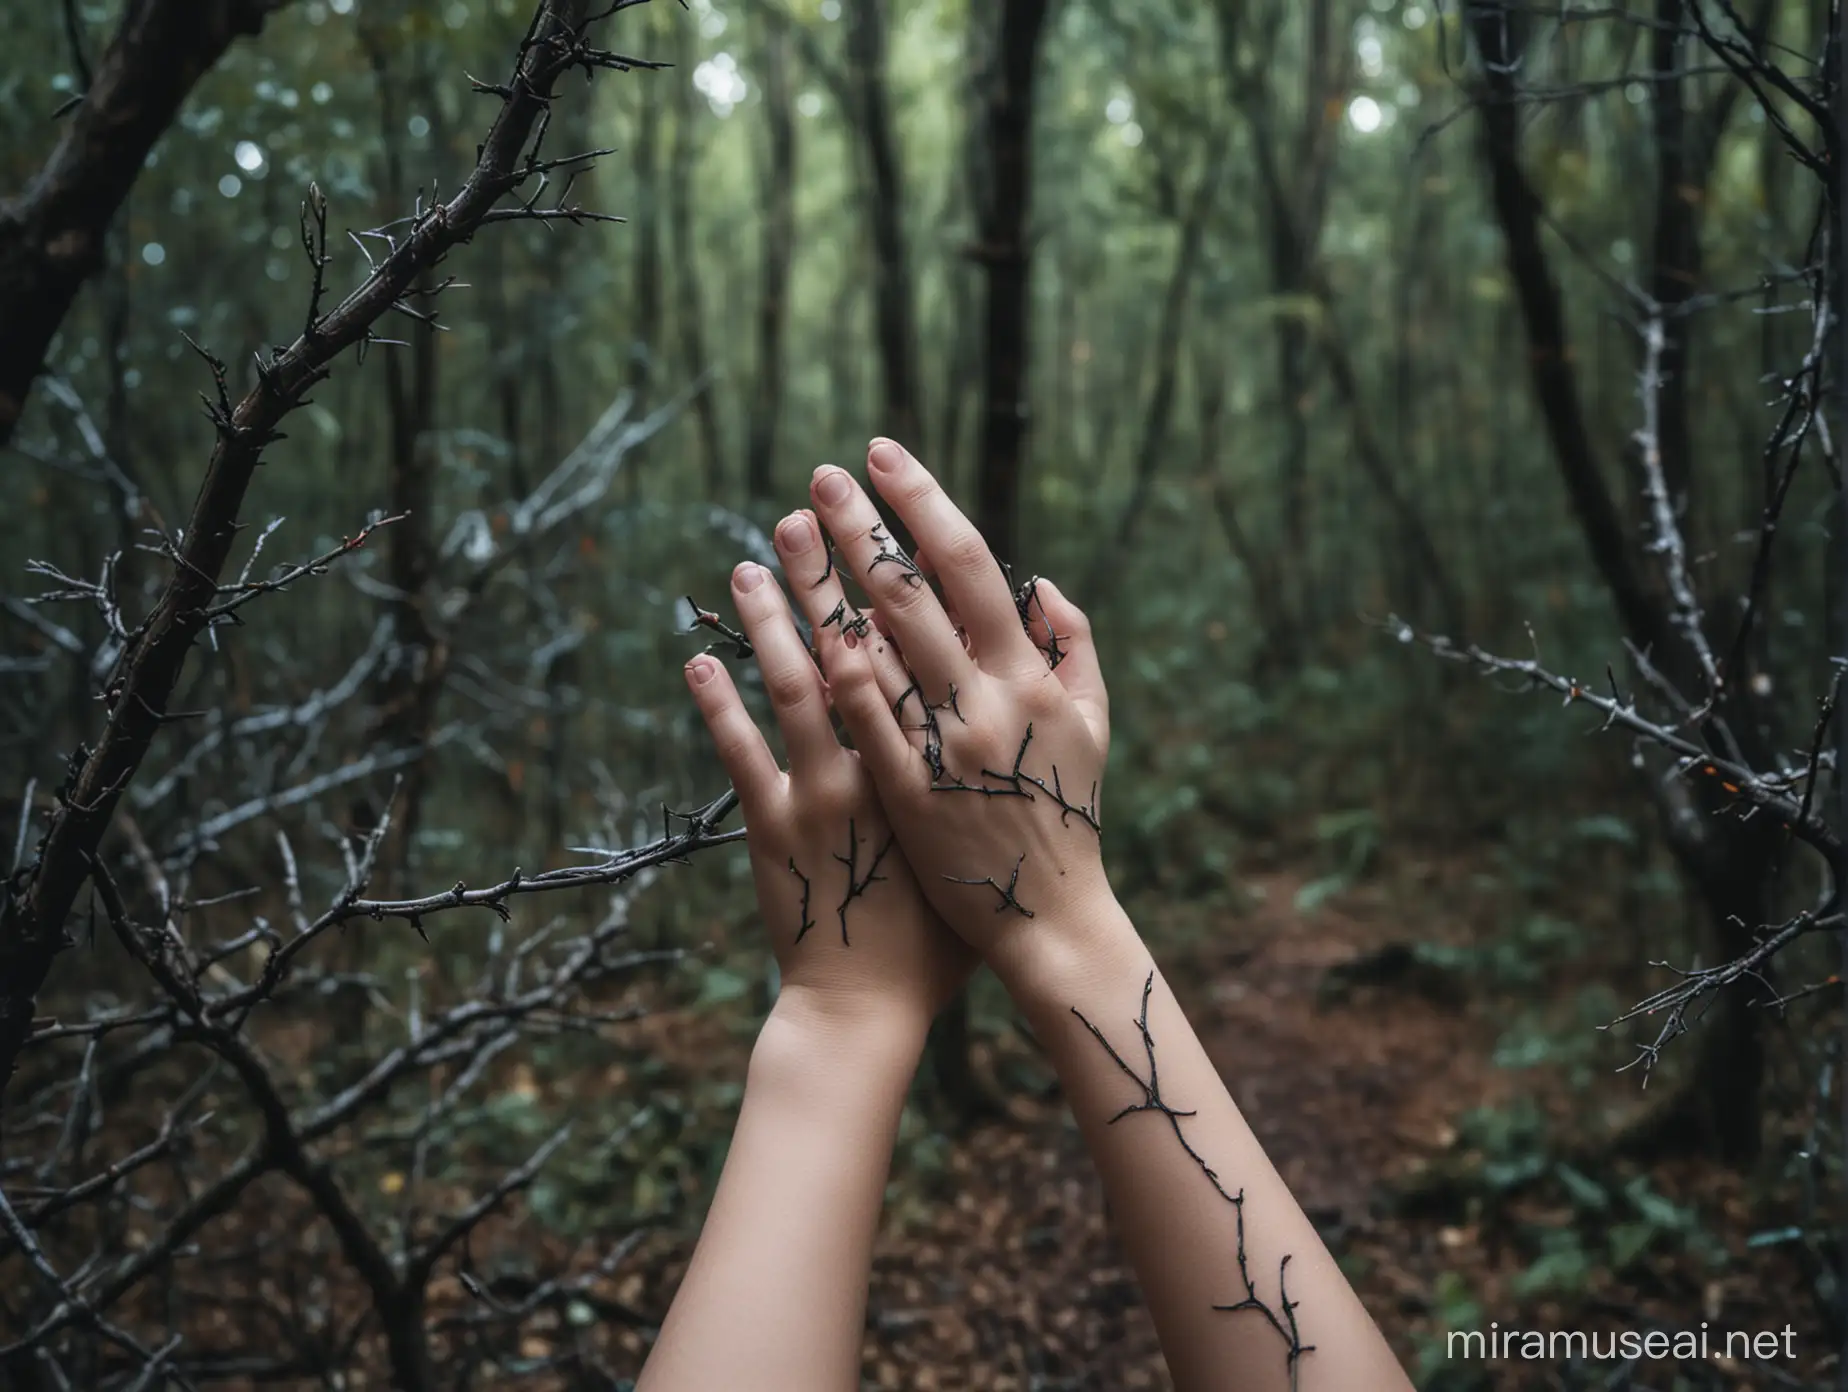 gros plan de deux mains de petite fille qui a des épines dans la peau. Ell est dans une forêt magique sombre.